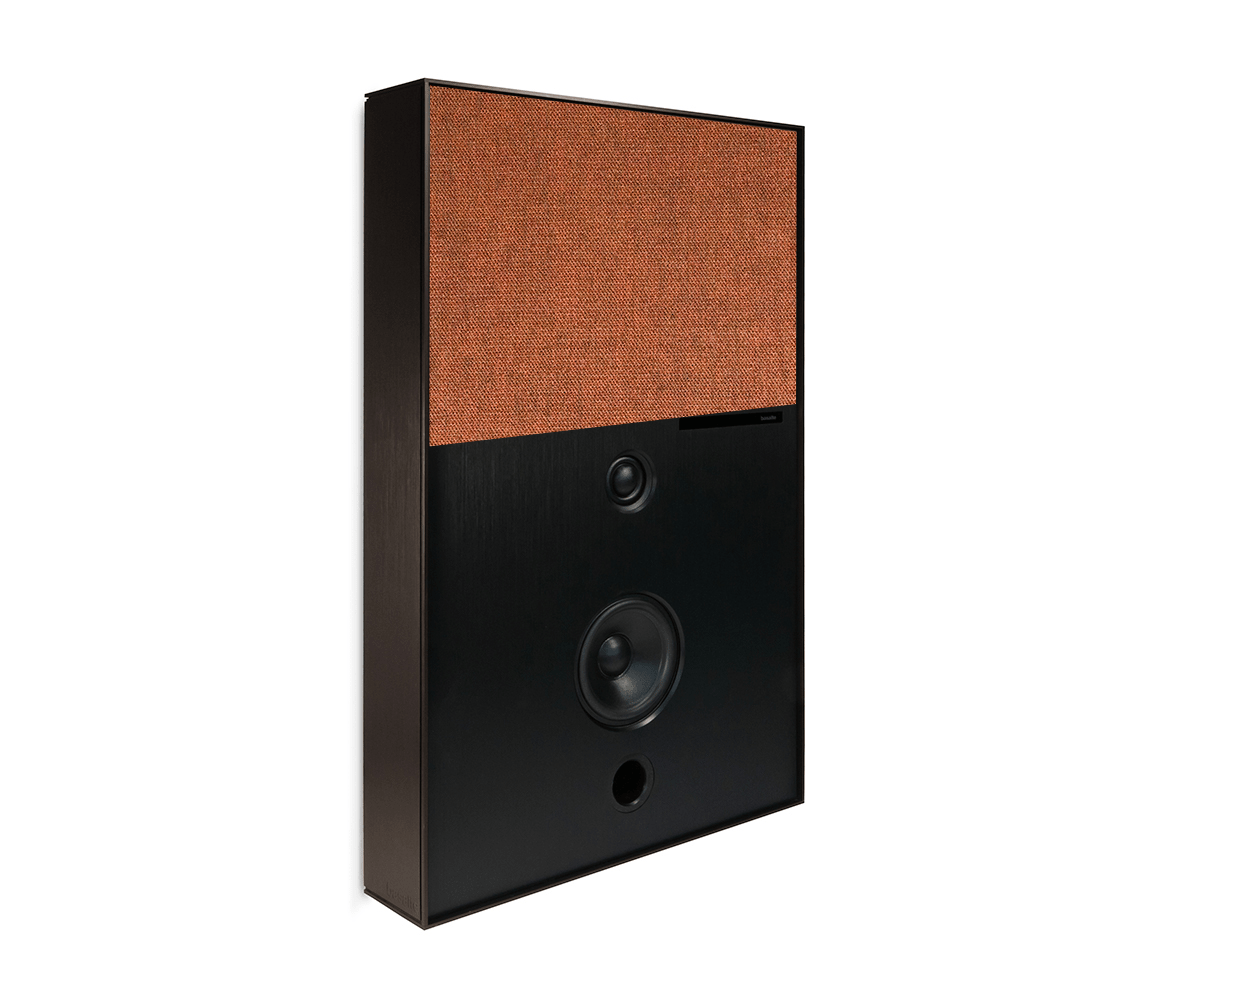 bronze and orange aalto d3 active speaker